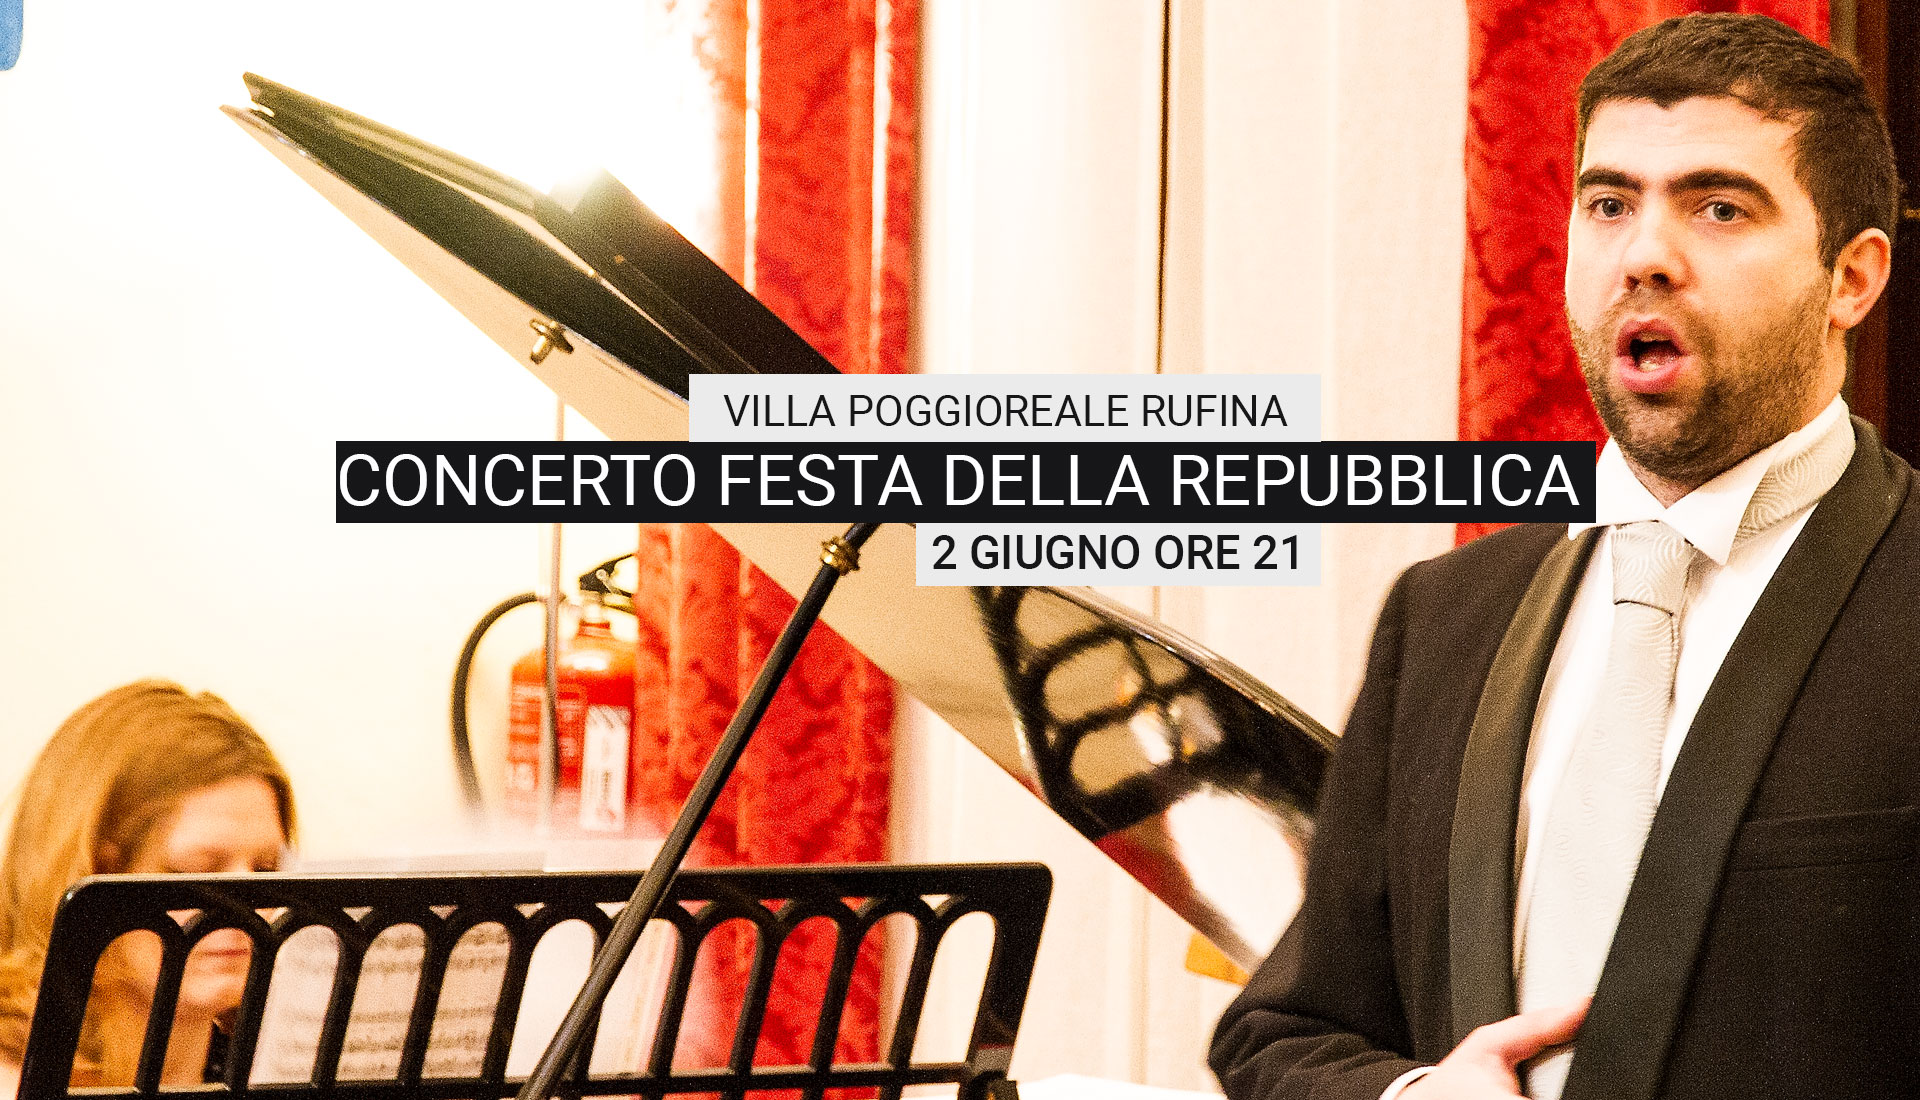 Concerto festa della Repubblica 2 Giugno ore 21 villa Poggioreale Rufina